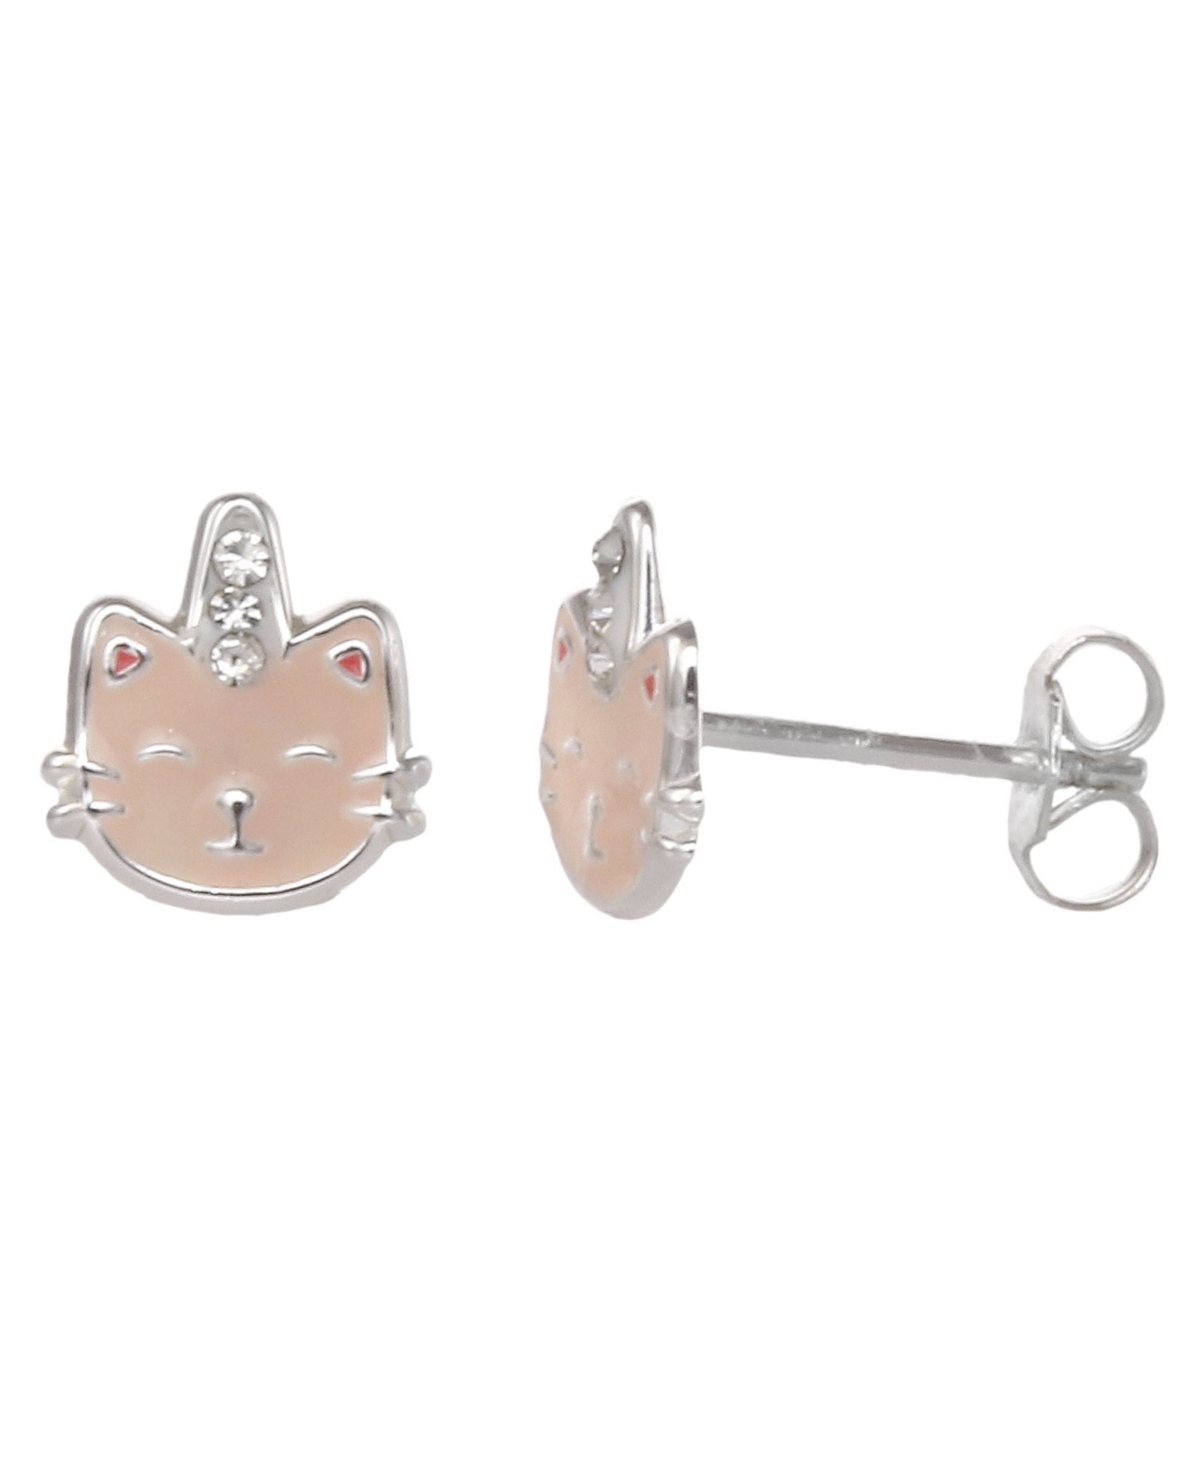 Women's Sterling Silver Enamel Kitty Stud Earrings with Crystal Stone - Pink